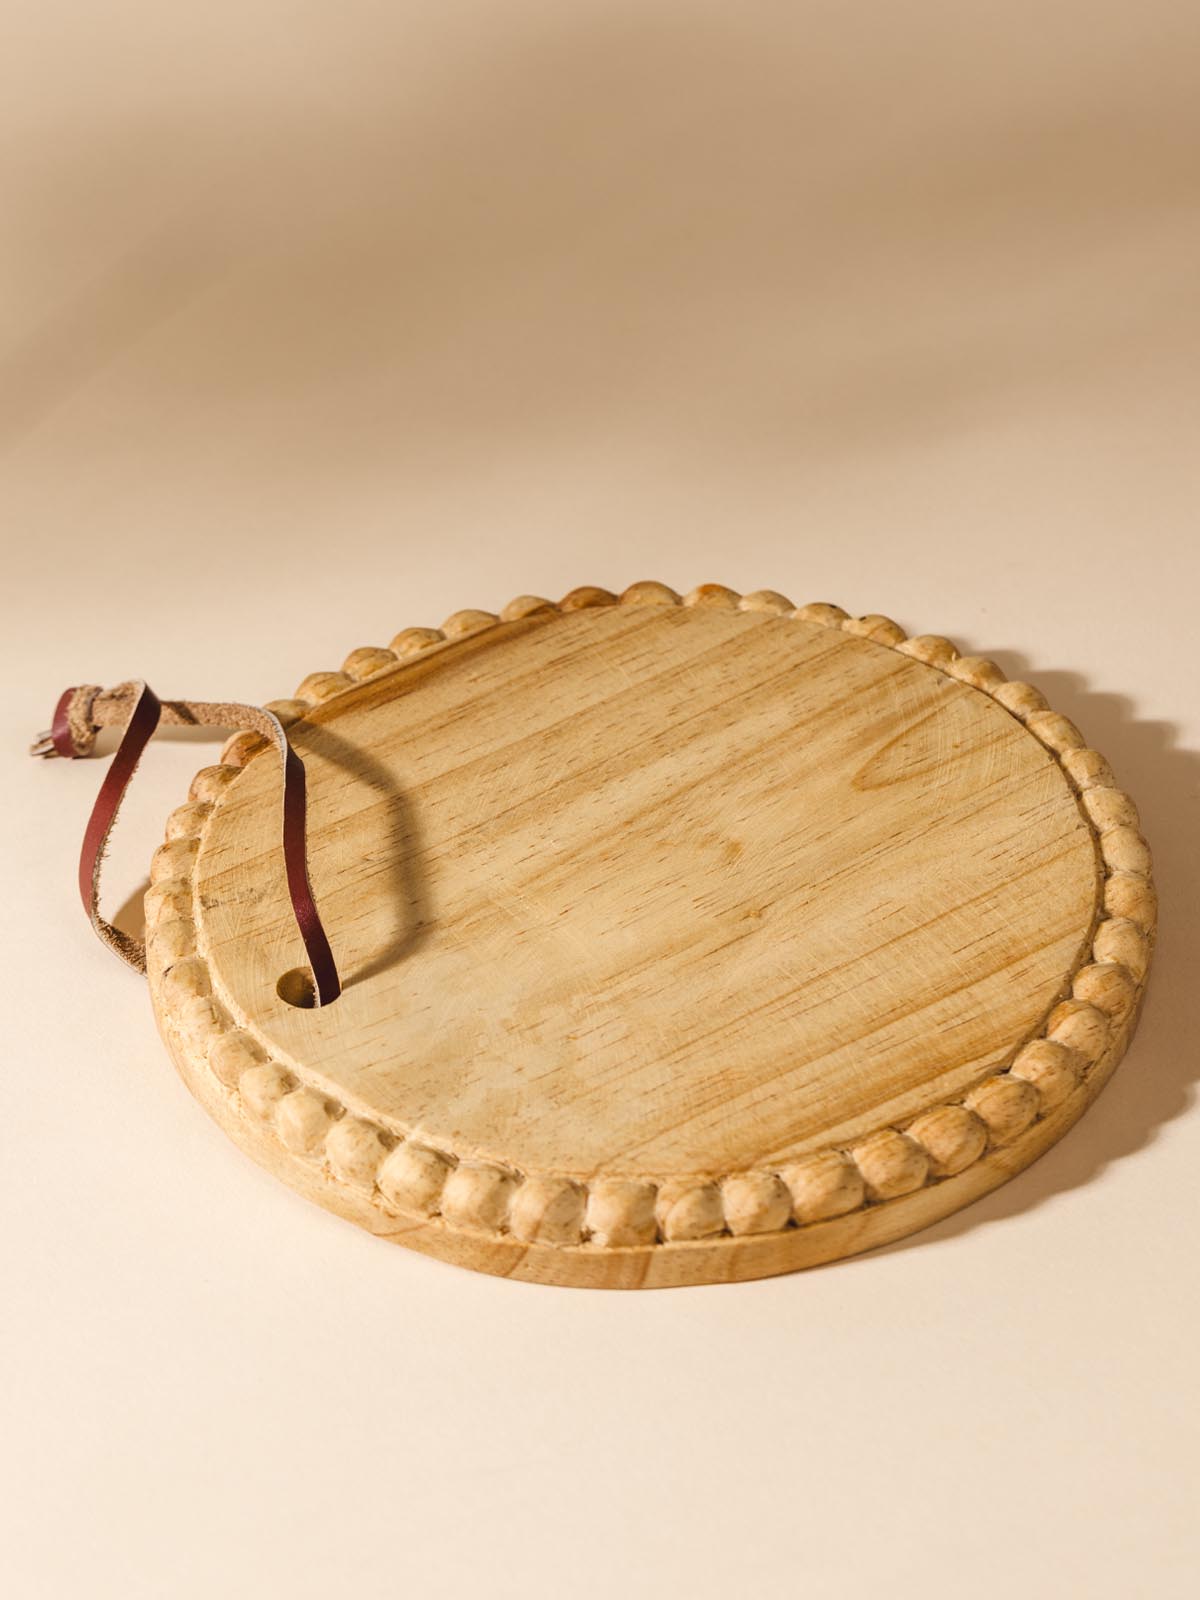 Round wooden serving tray on beige background